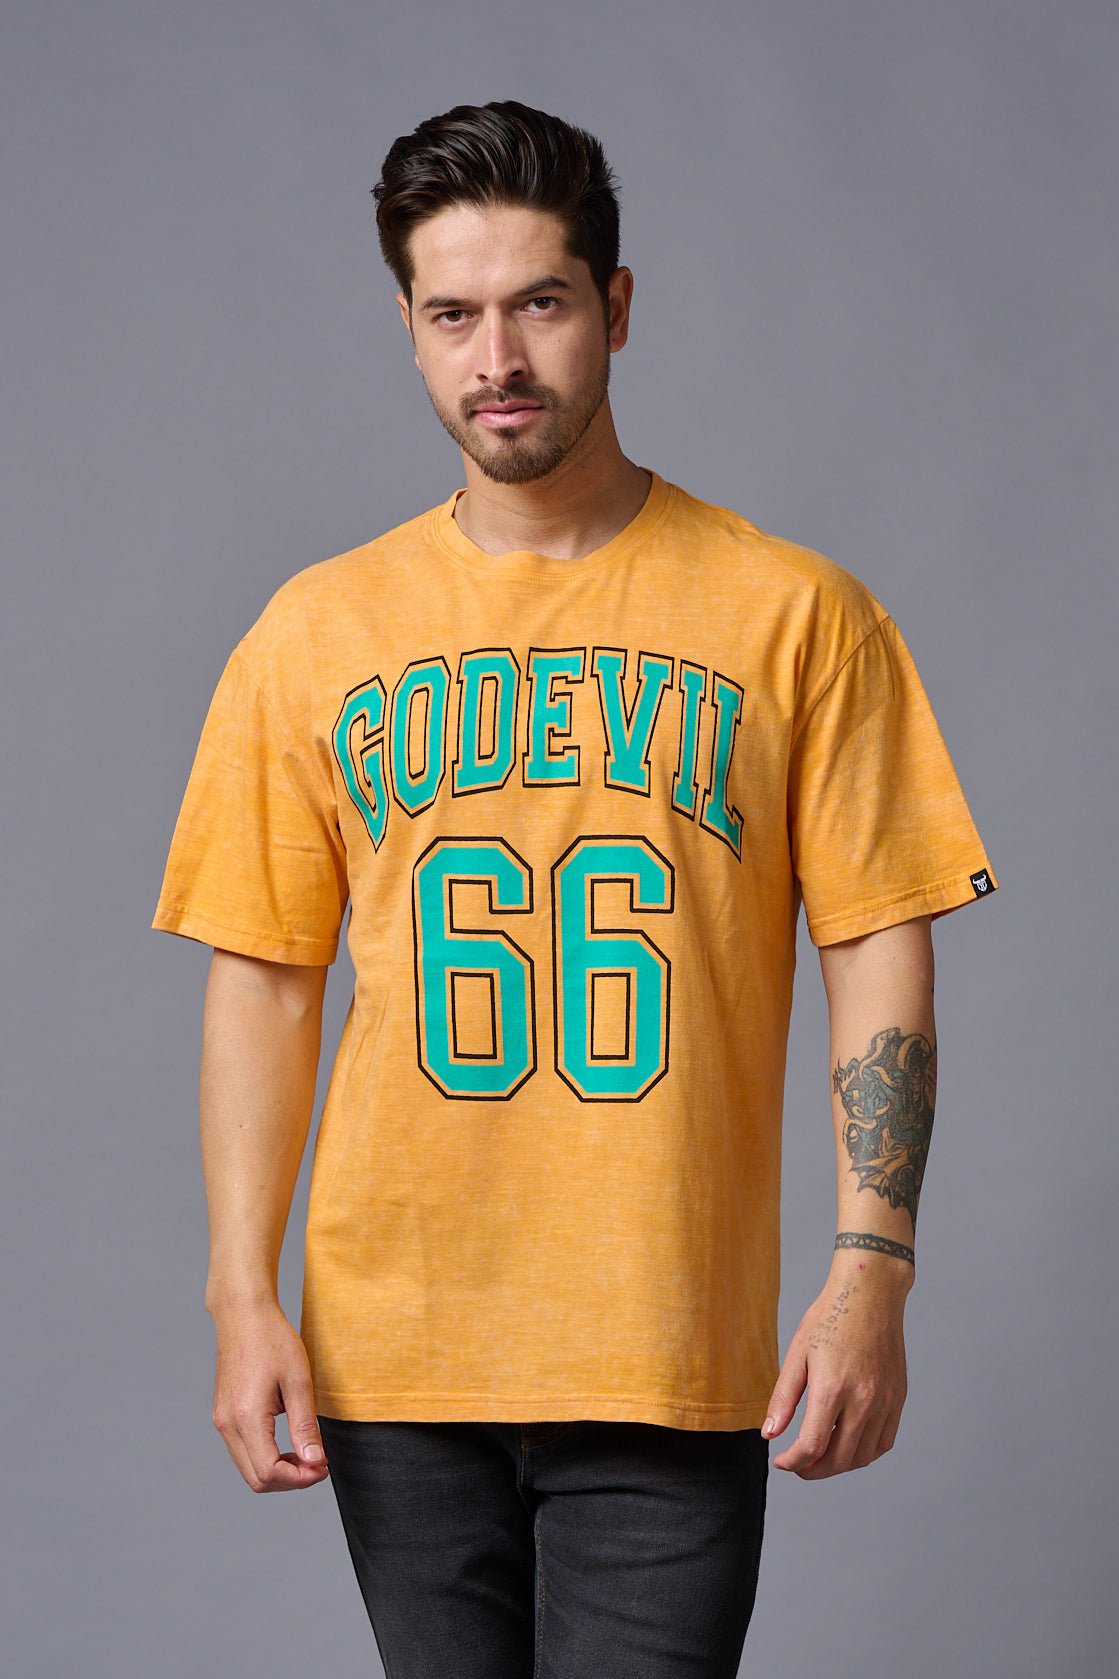 Go Devil 66 Printed Musturd Wash Print Oversized T-Shirt for Men - Go Devil